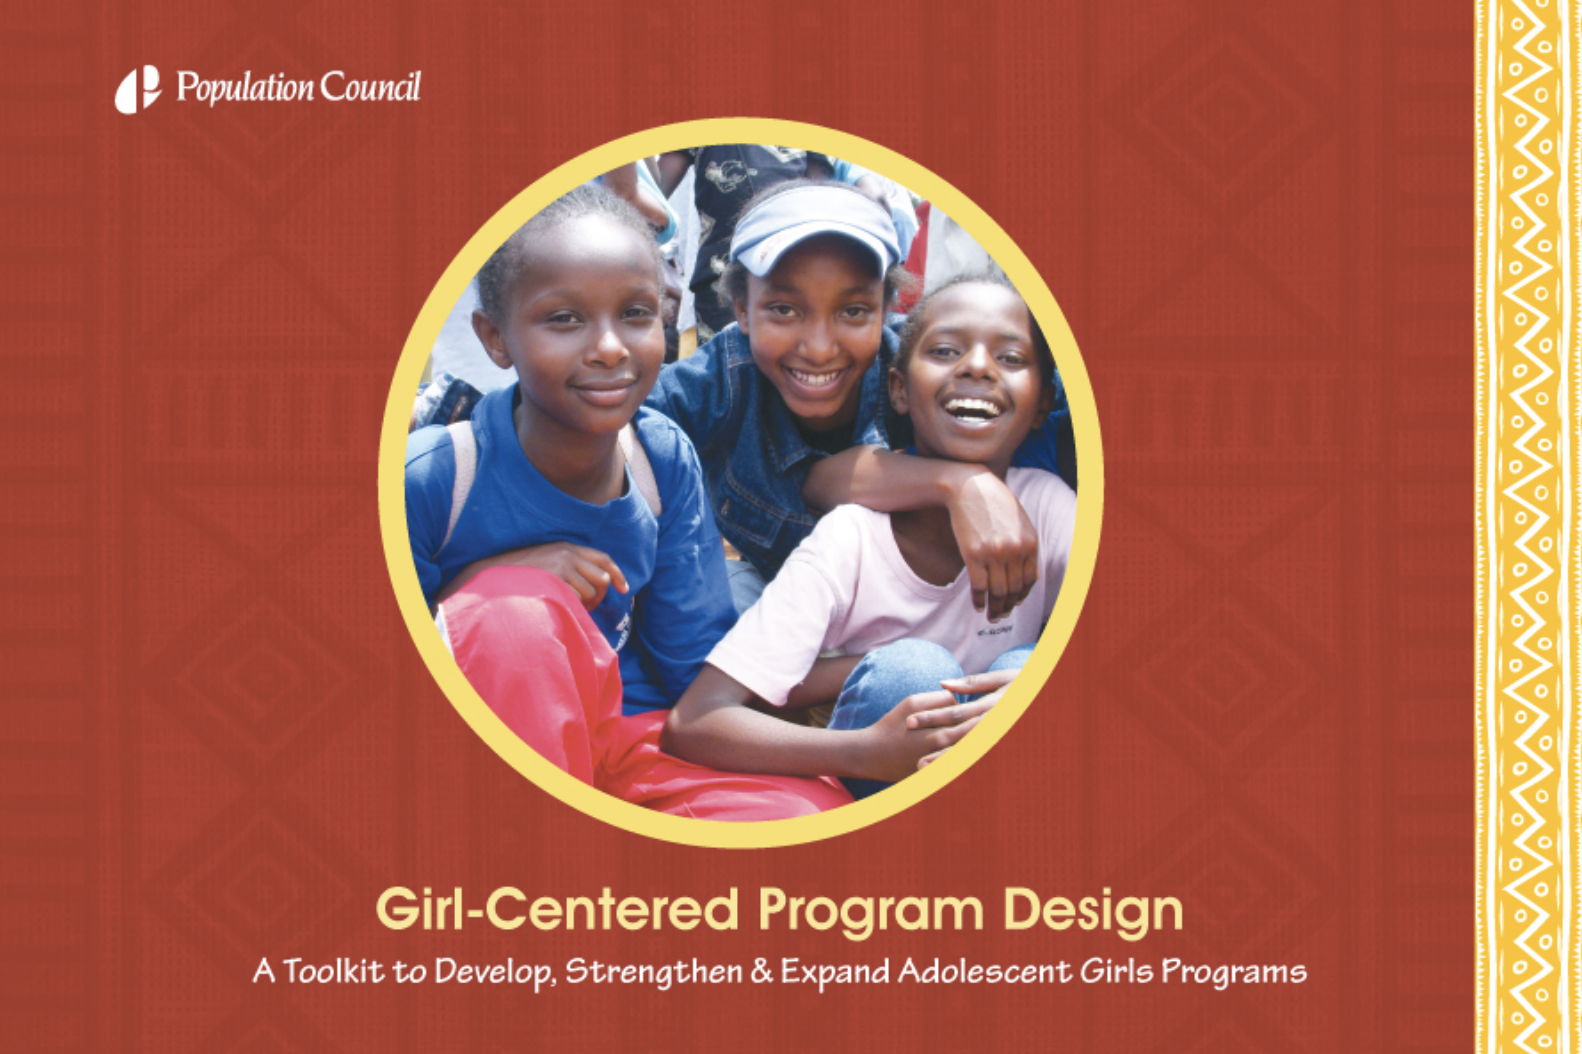 لڑکی مرکوز پروگرام ڈیزائن: نوعمر لڑکیوں کے پروگراموں کو تیار کرنے، مضبوط بنانے اور وسعت دینے کے لئے ایک ٹول کٹ